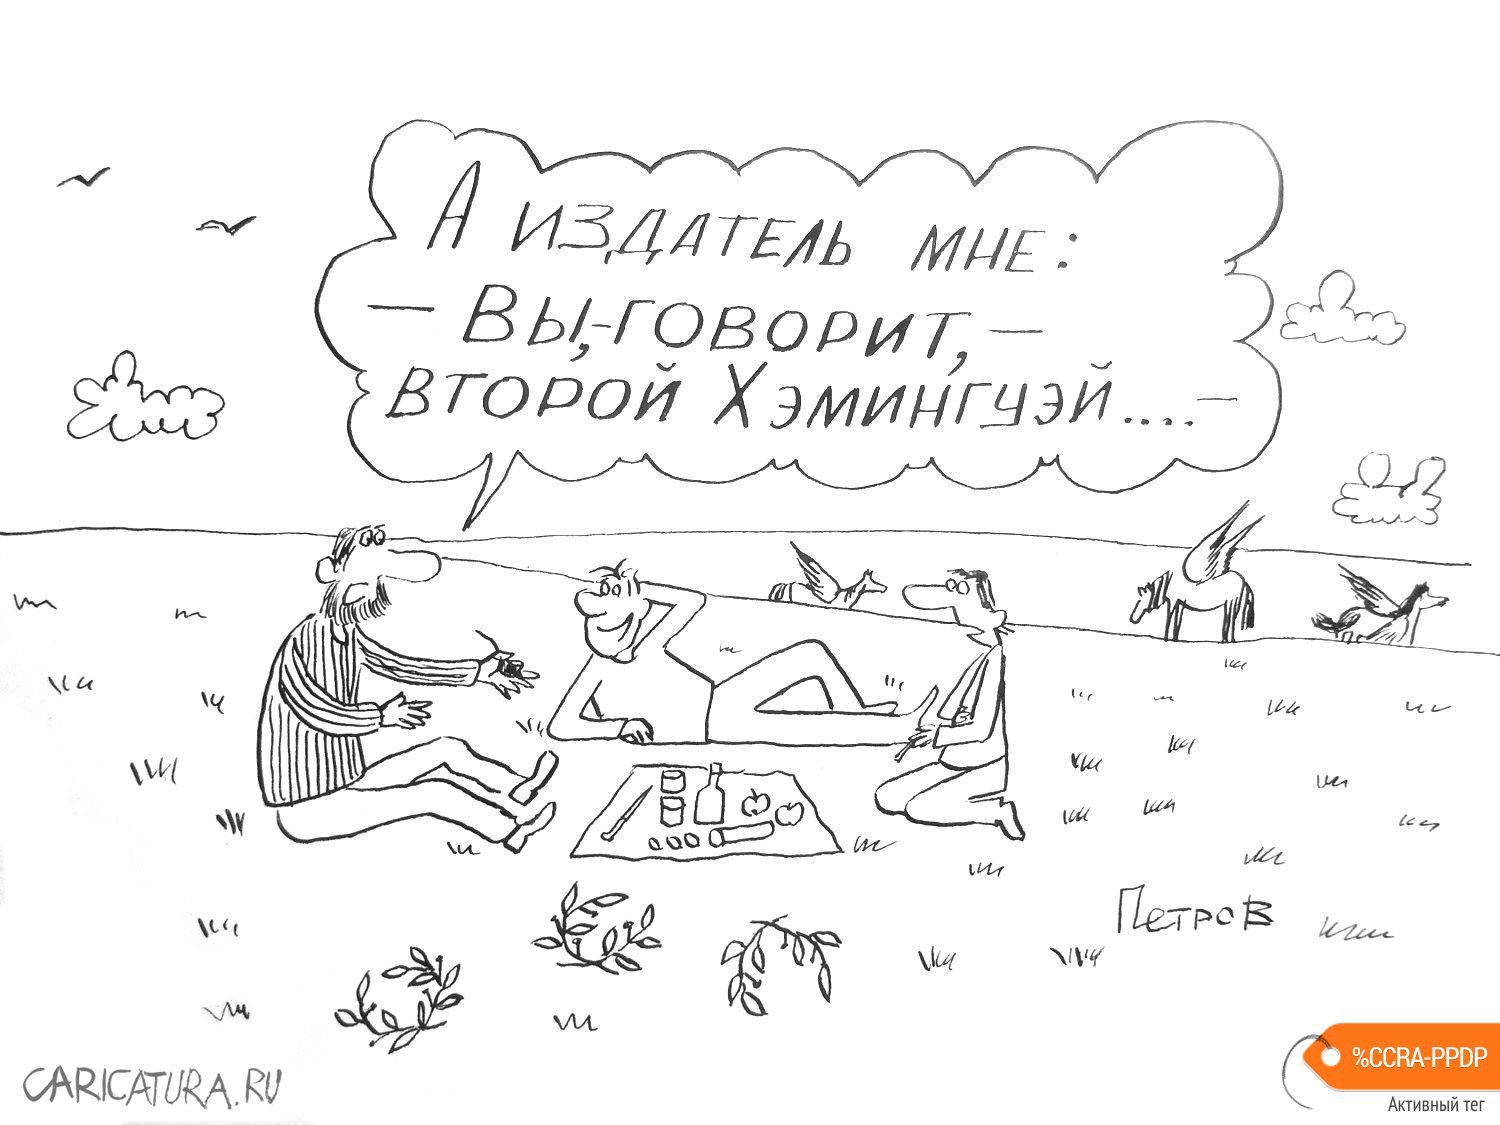 Карикатура "О нашем - о писательском", Александр Петров